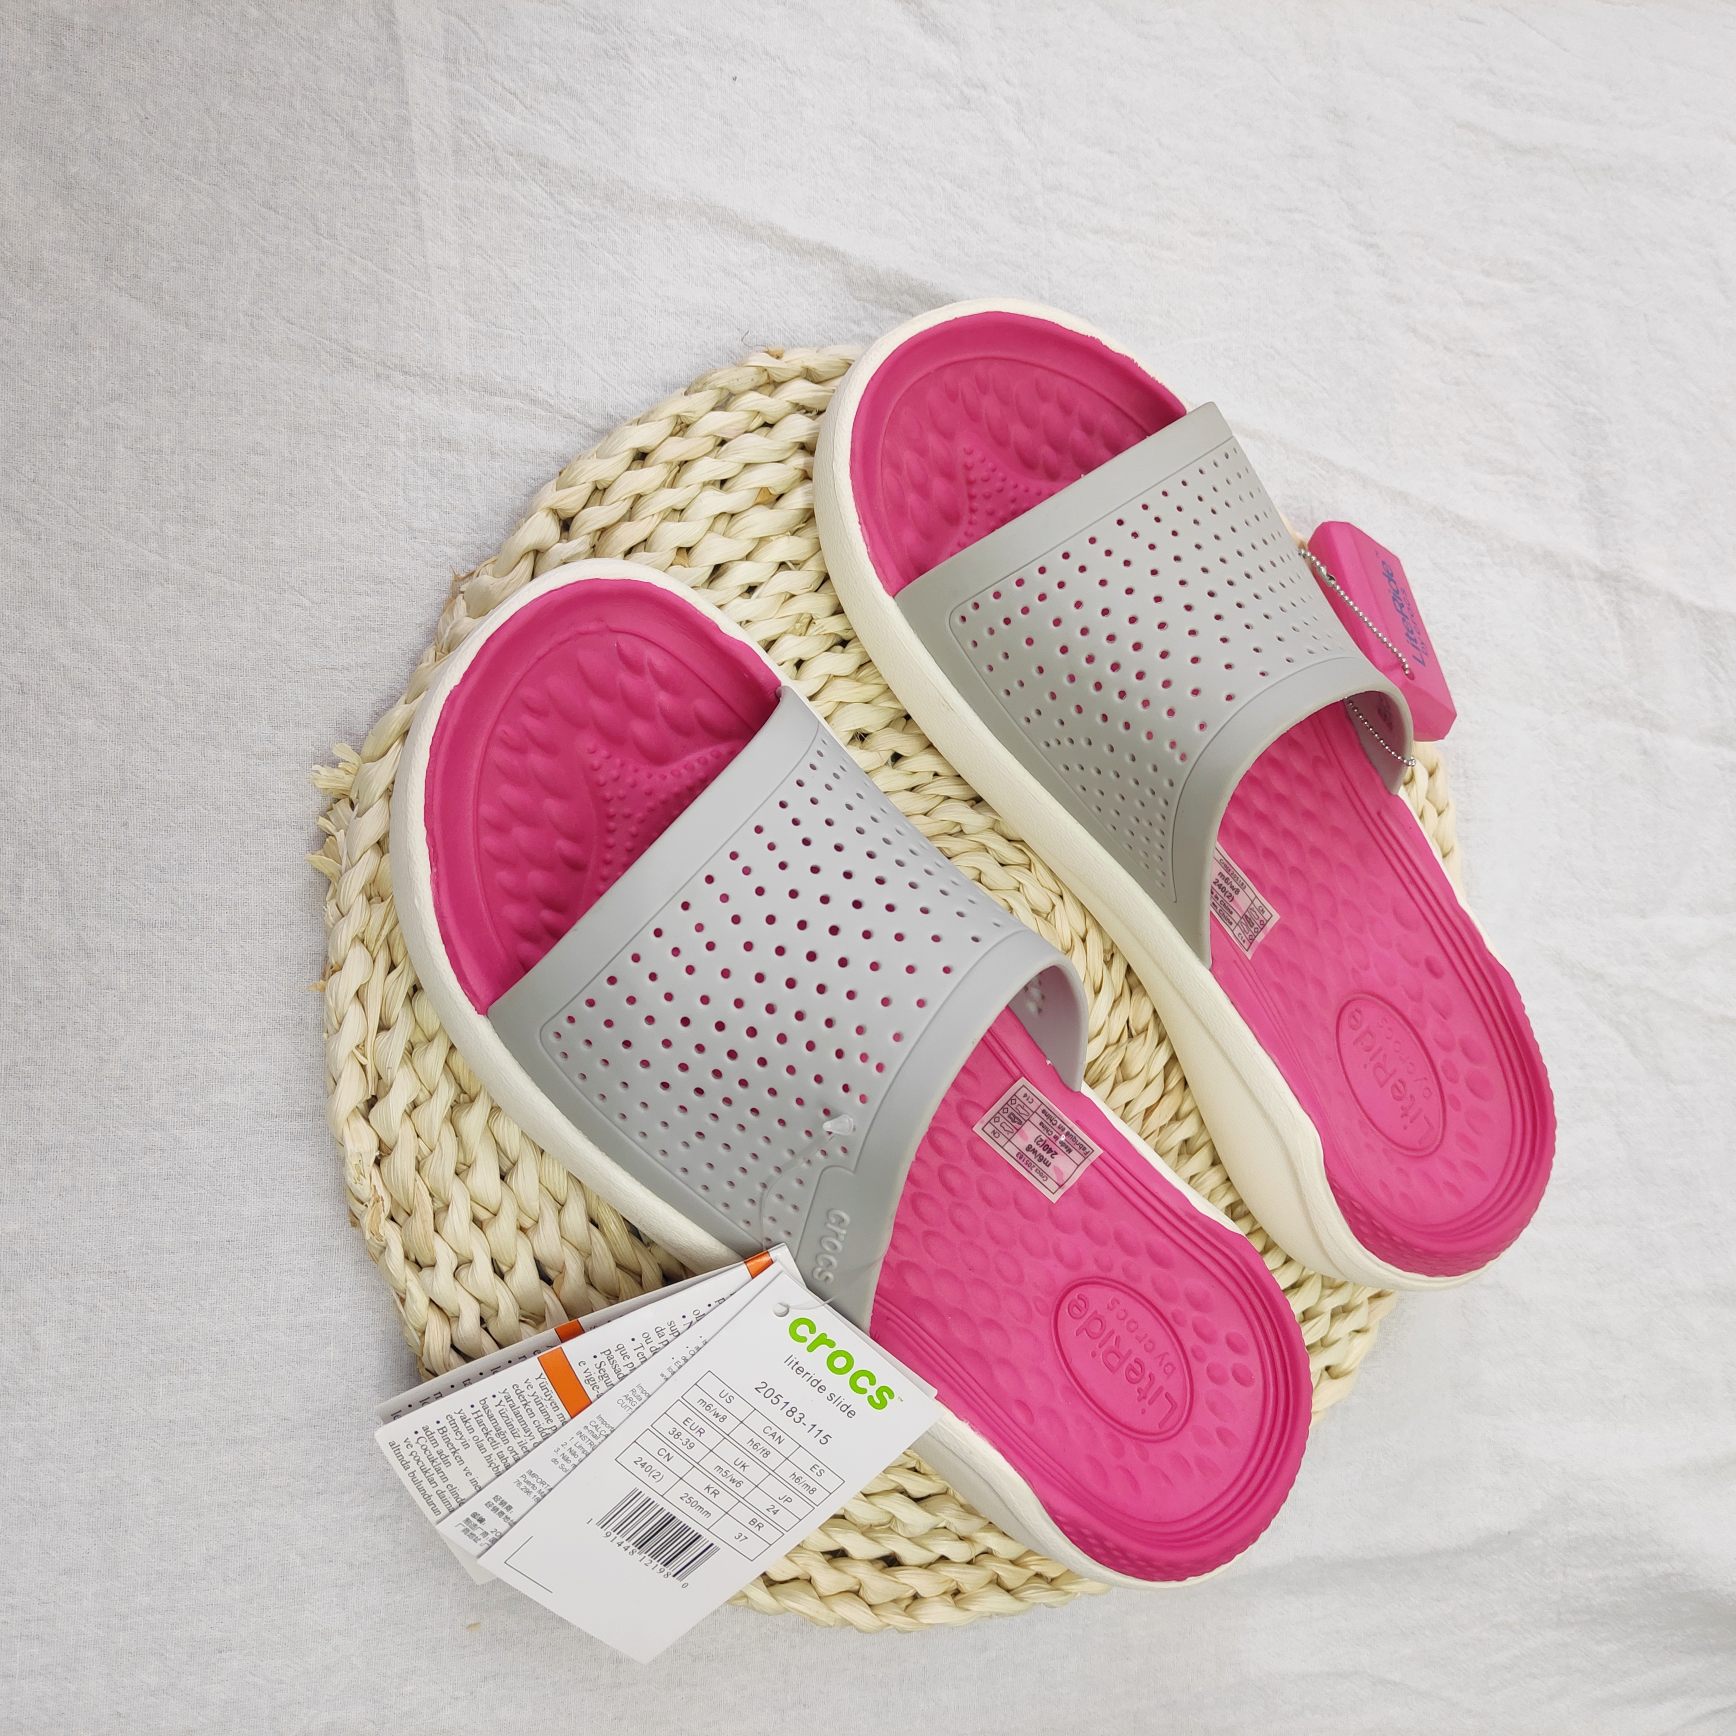 SAYYAS Men's and Women's LiteRide Slide Sandals Pearl White